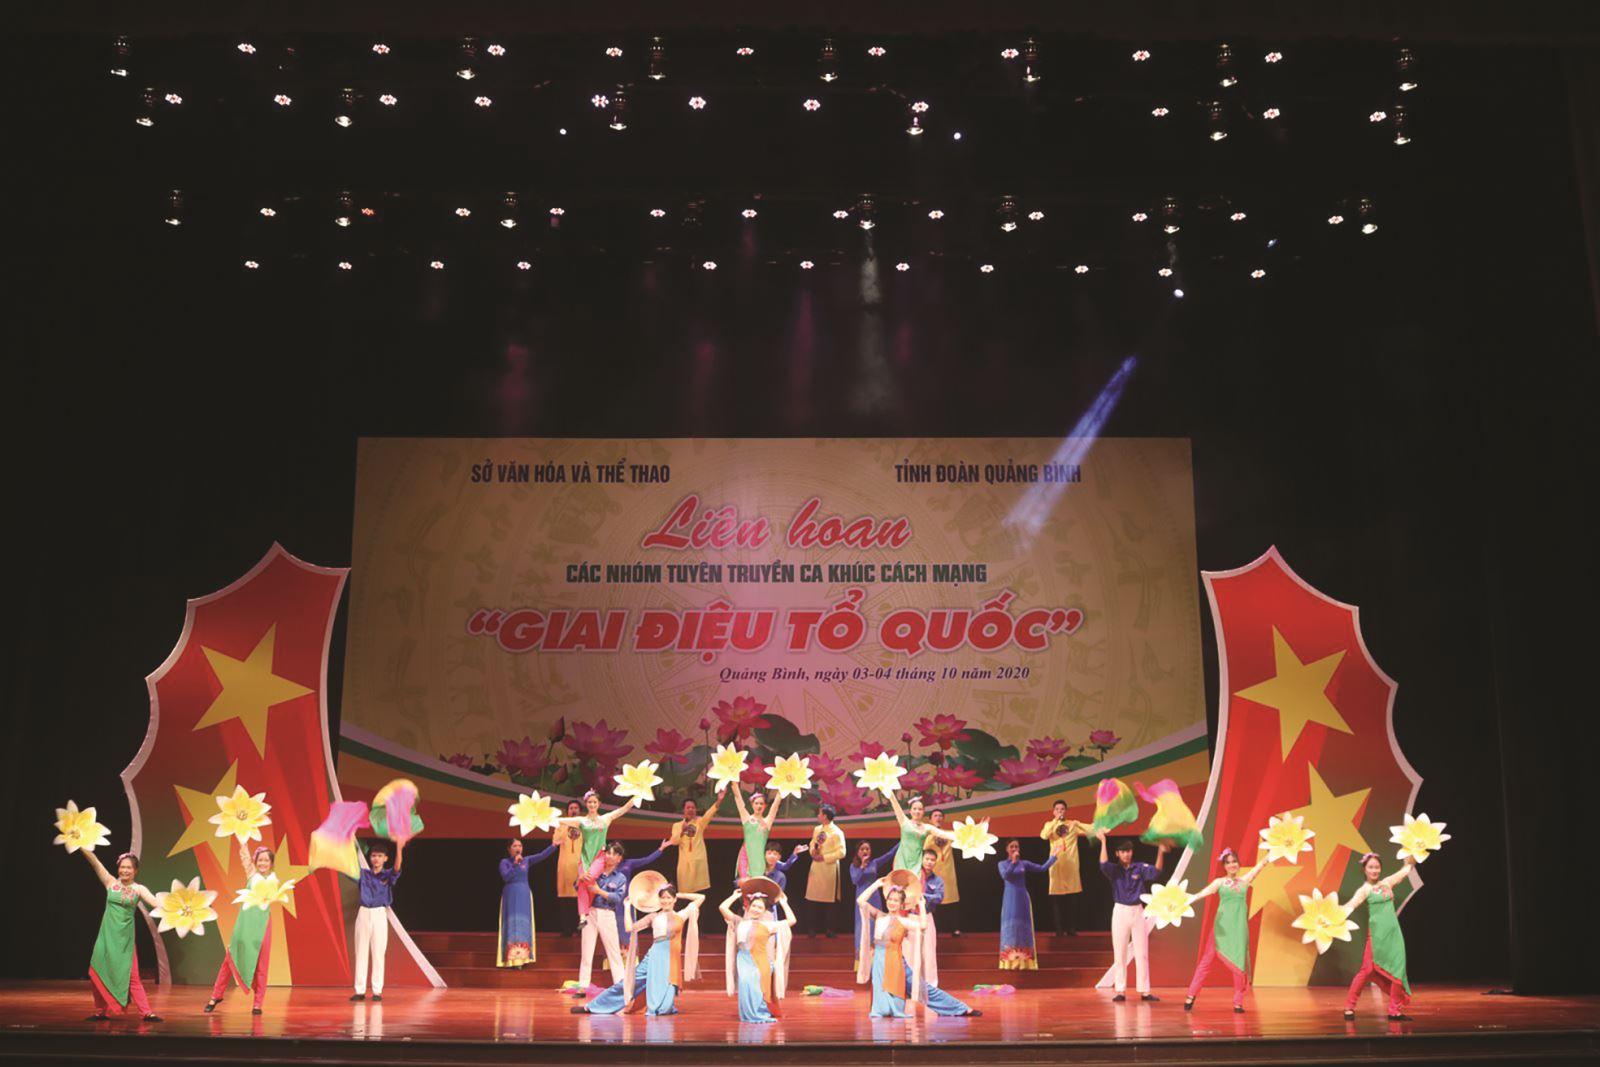 Quảng Bình: Liên hoan các nhóm tuyên truyền ca khúc cách mạng